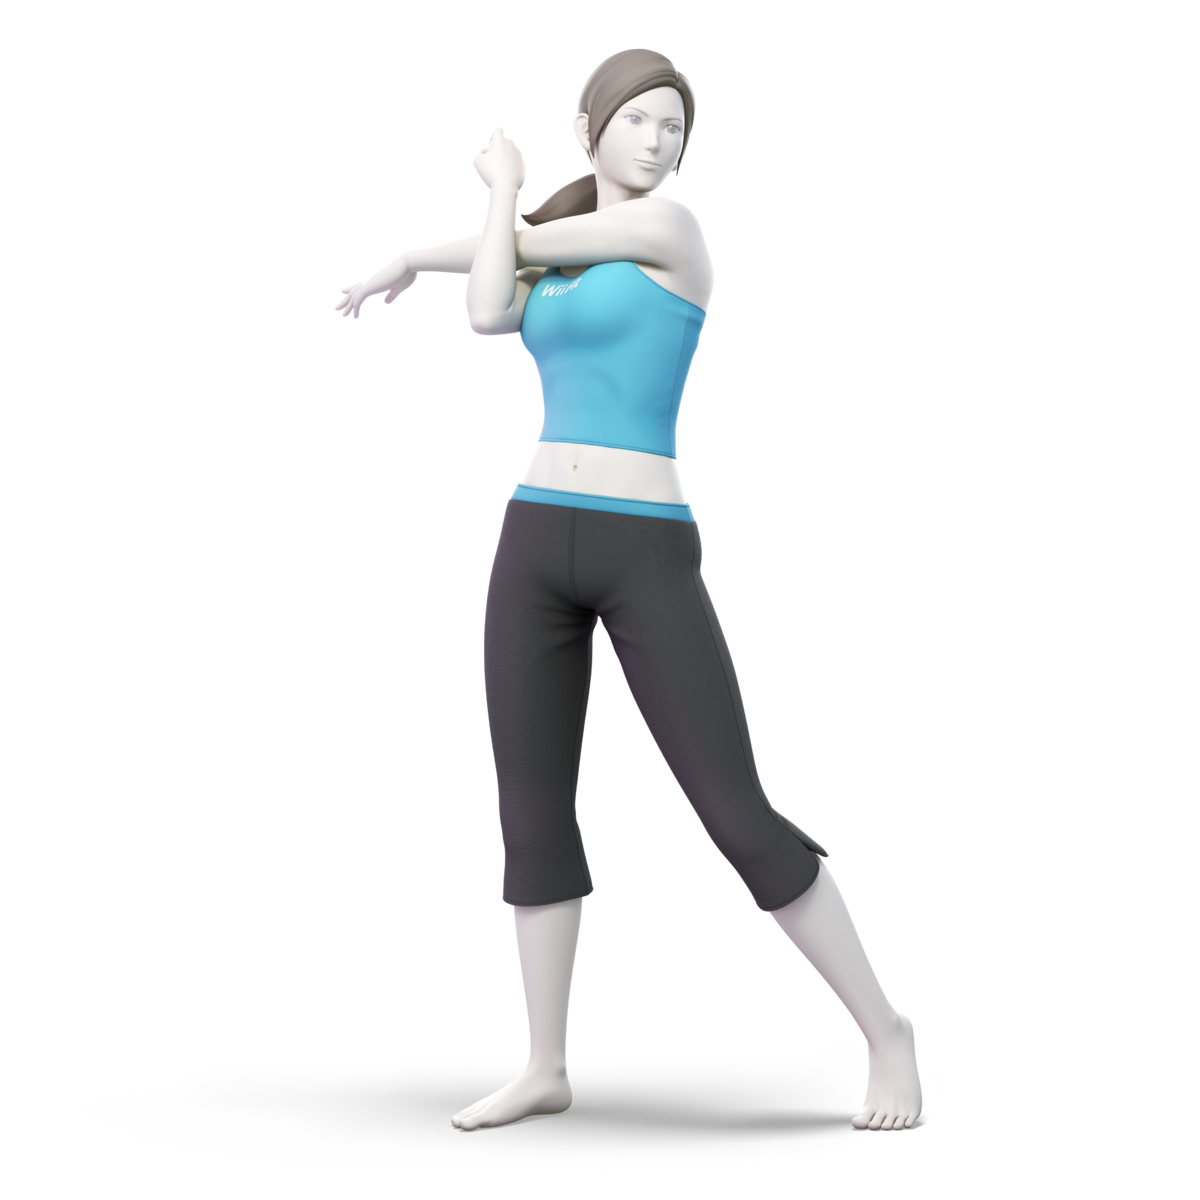 Le personnage entraîneur Wii Fit de Super Smash Bros. Ultimate